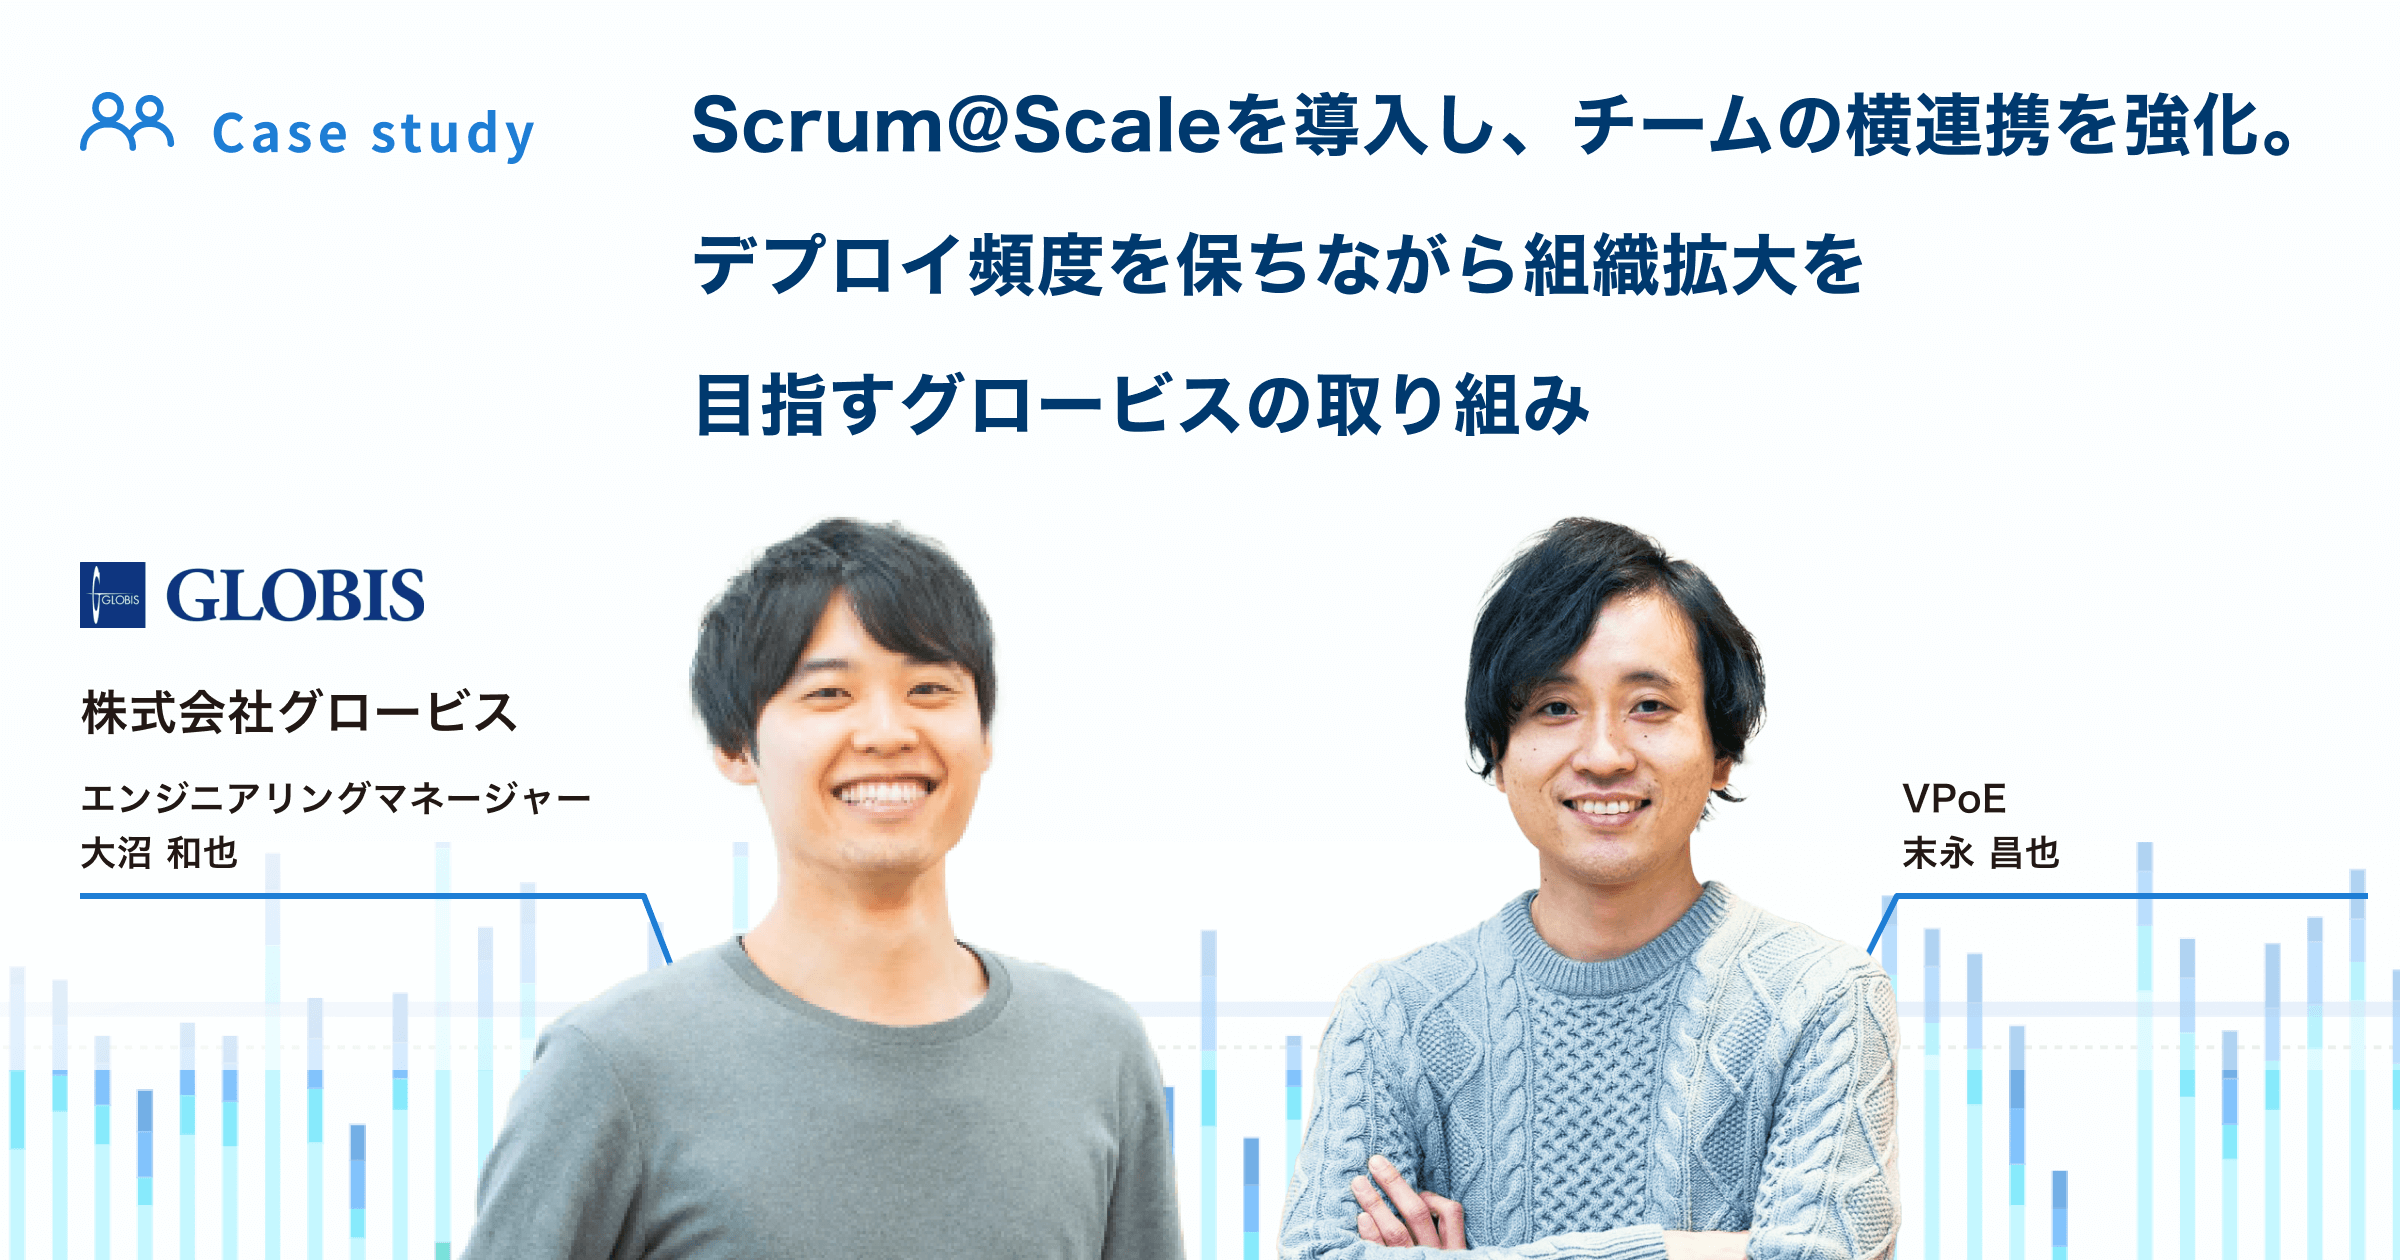 Scrum@Scaleを導入し、チームの横連携を強化。デプロイ頻度を保ちながら組織拡大を目指すグロービスの取り組み